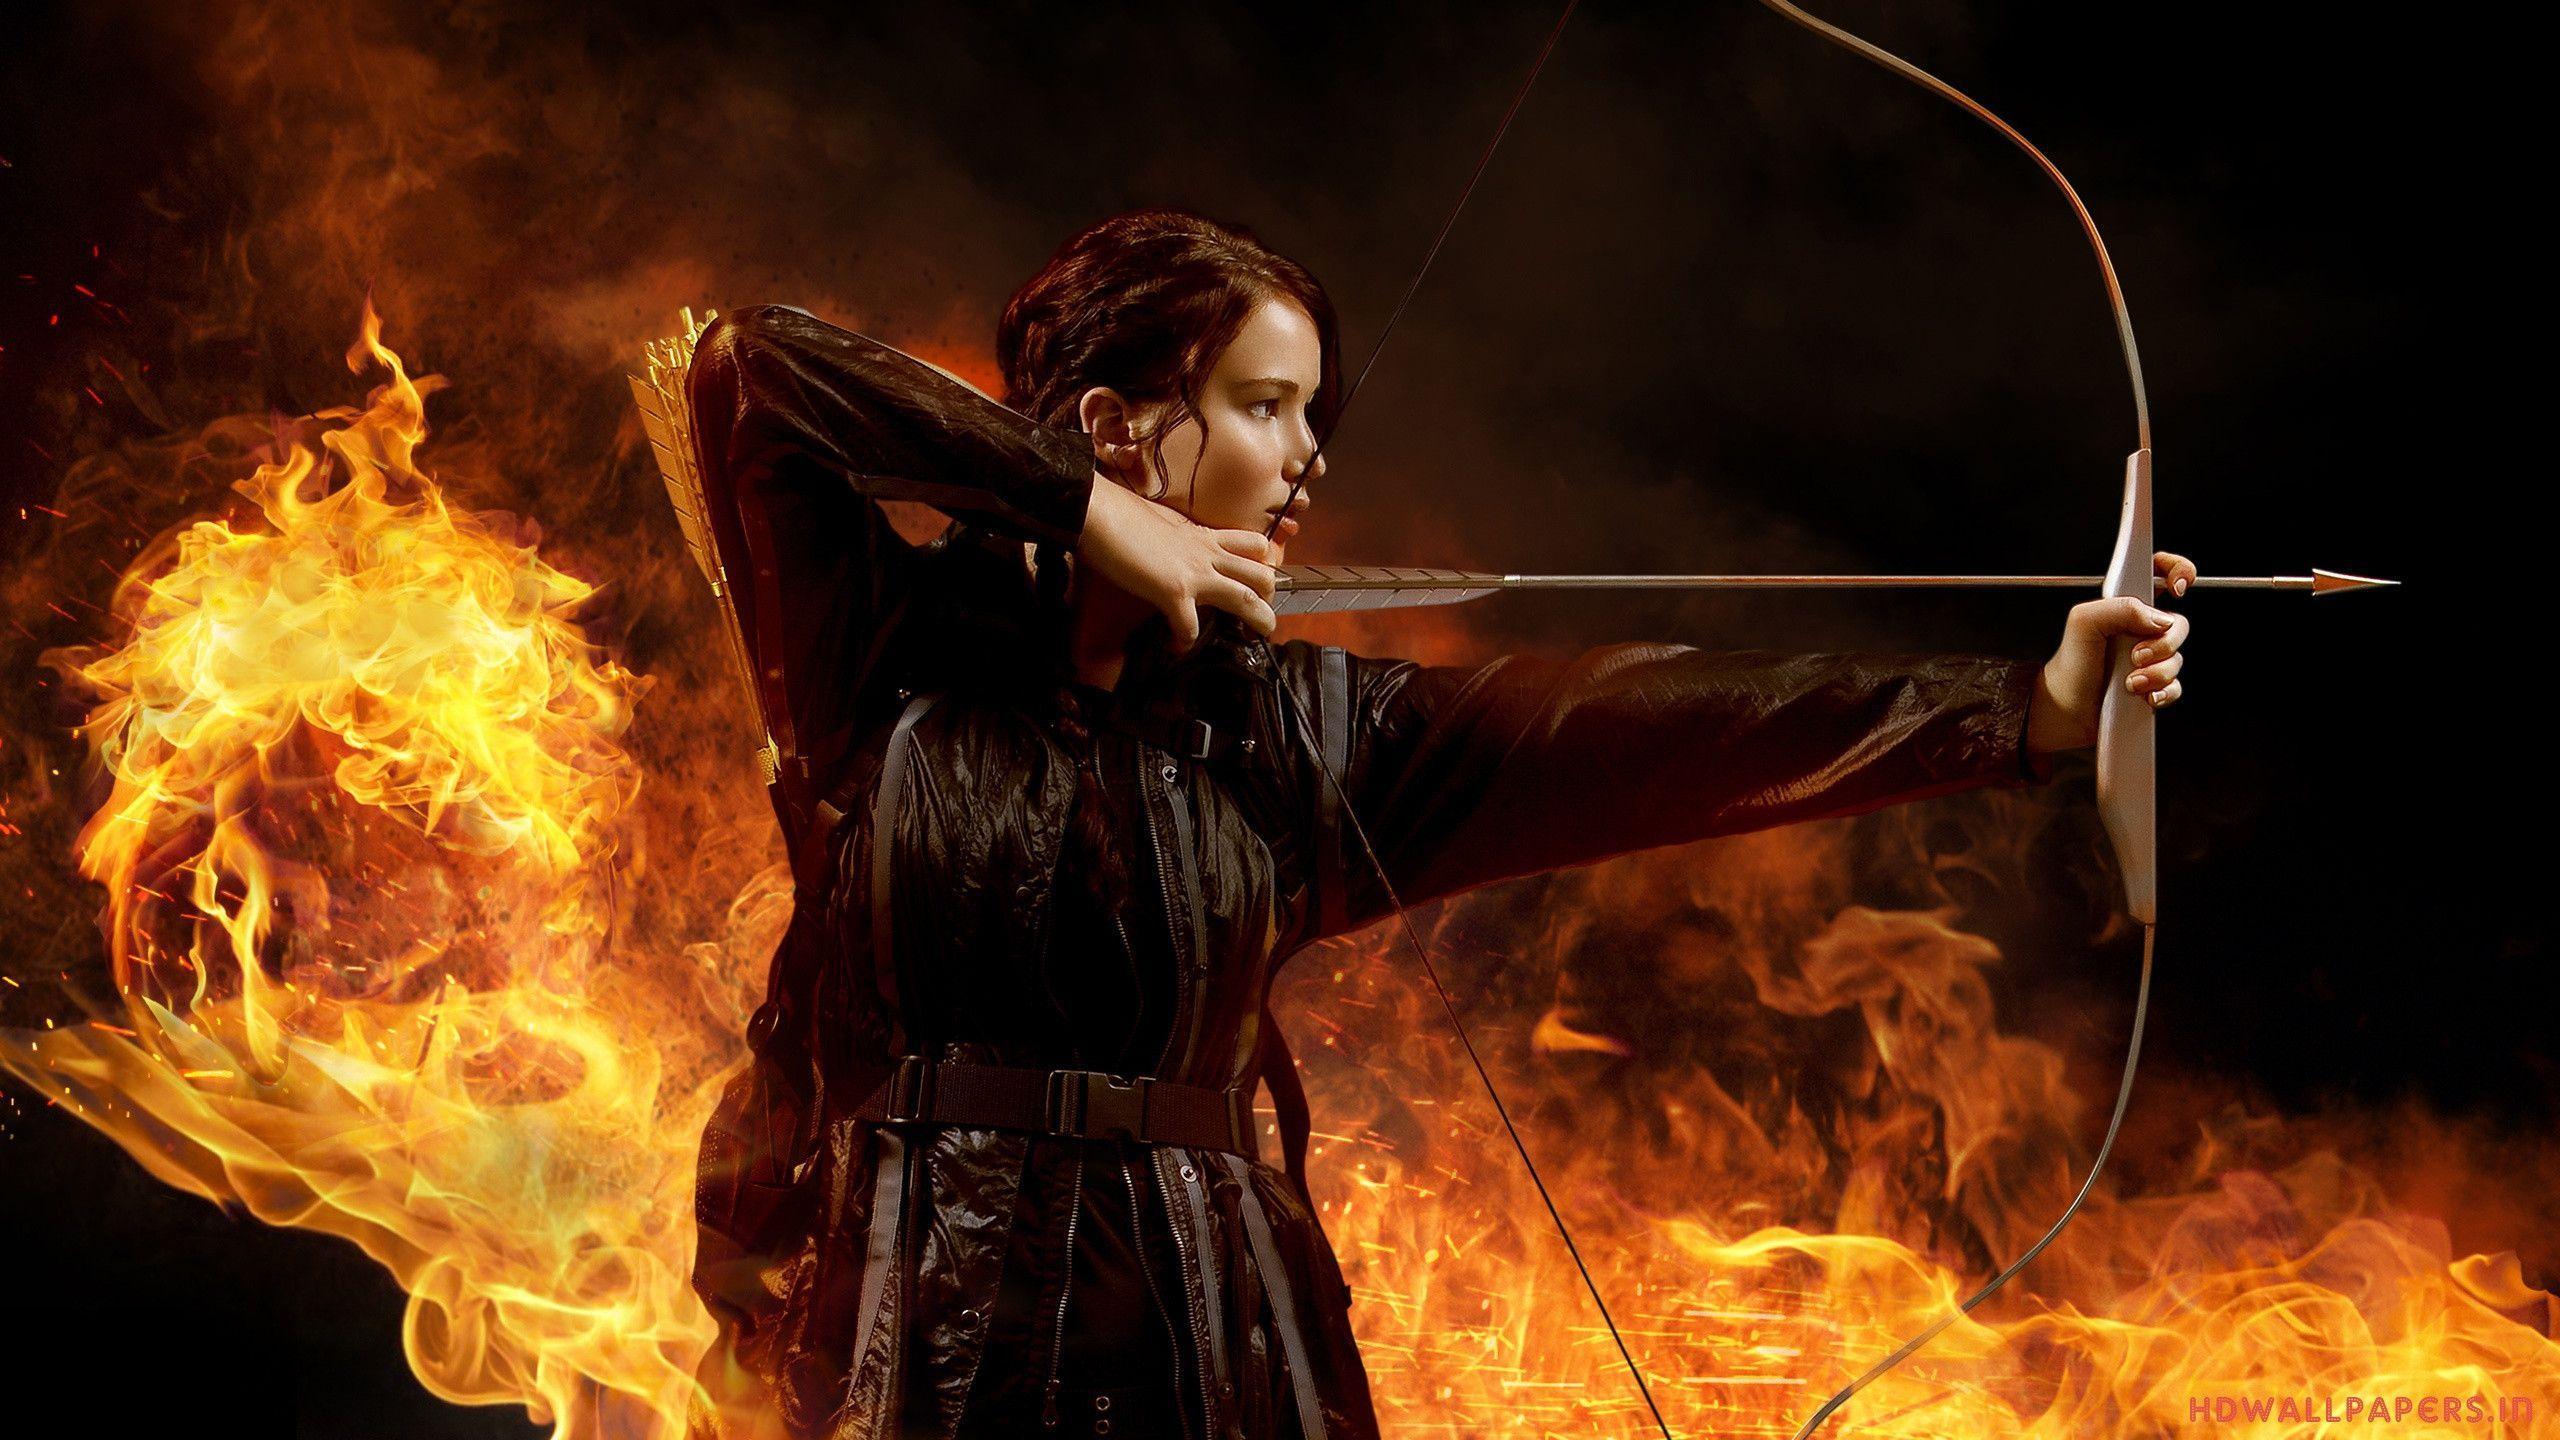 Hunger Games Catching Fire wallpaper 242302